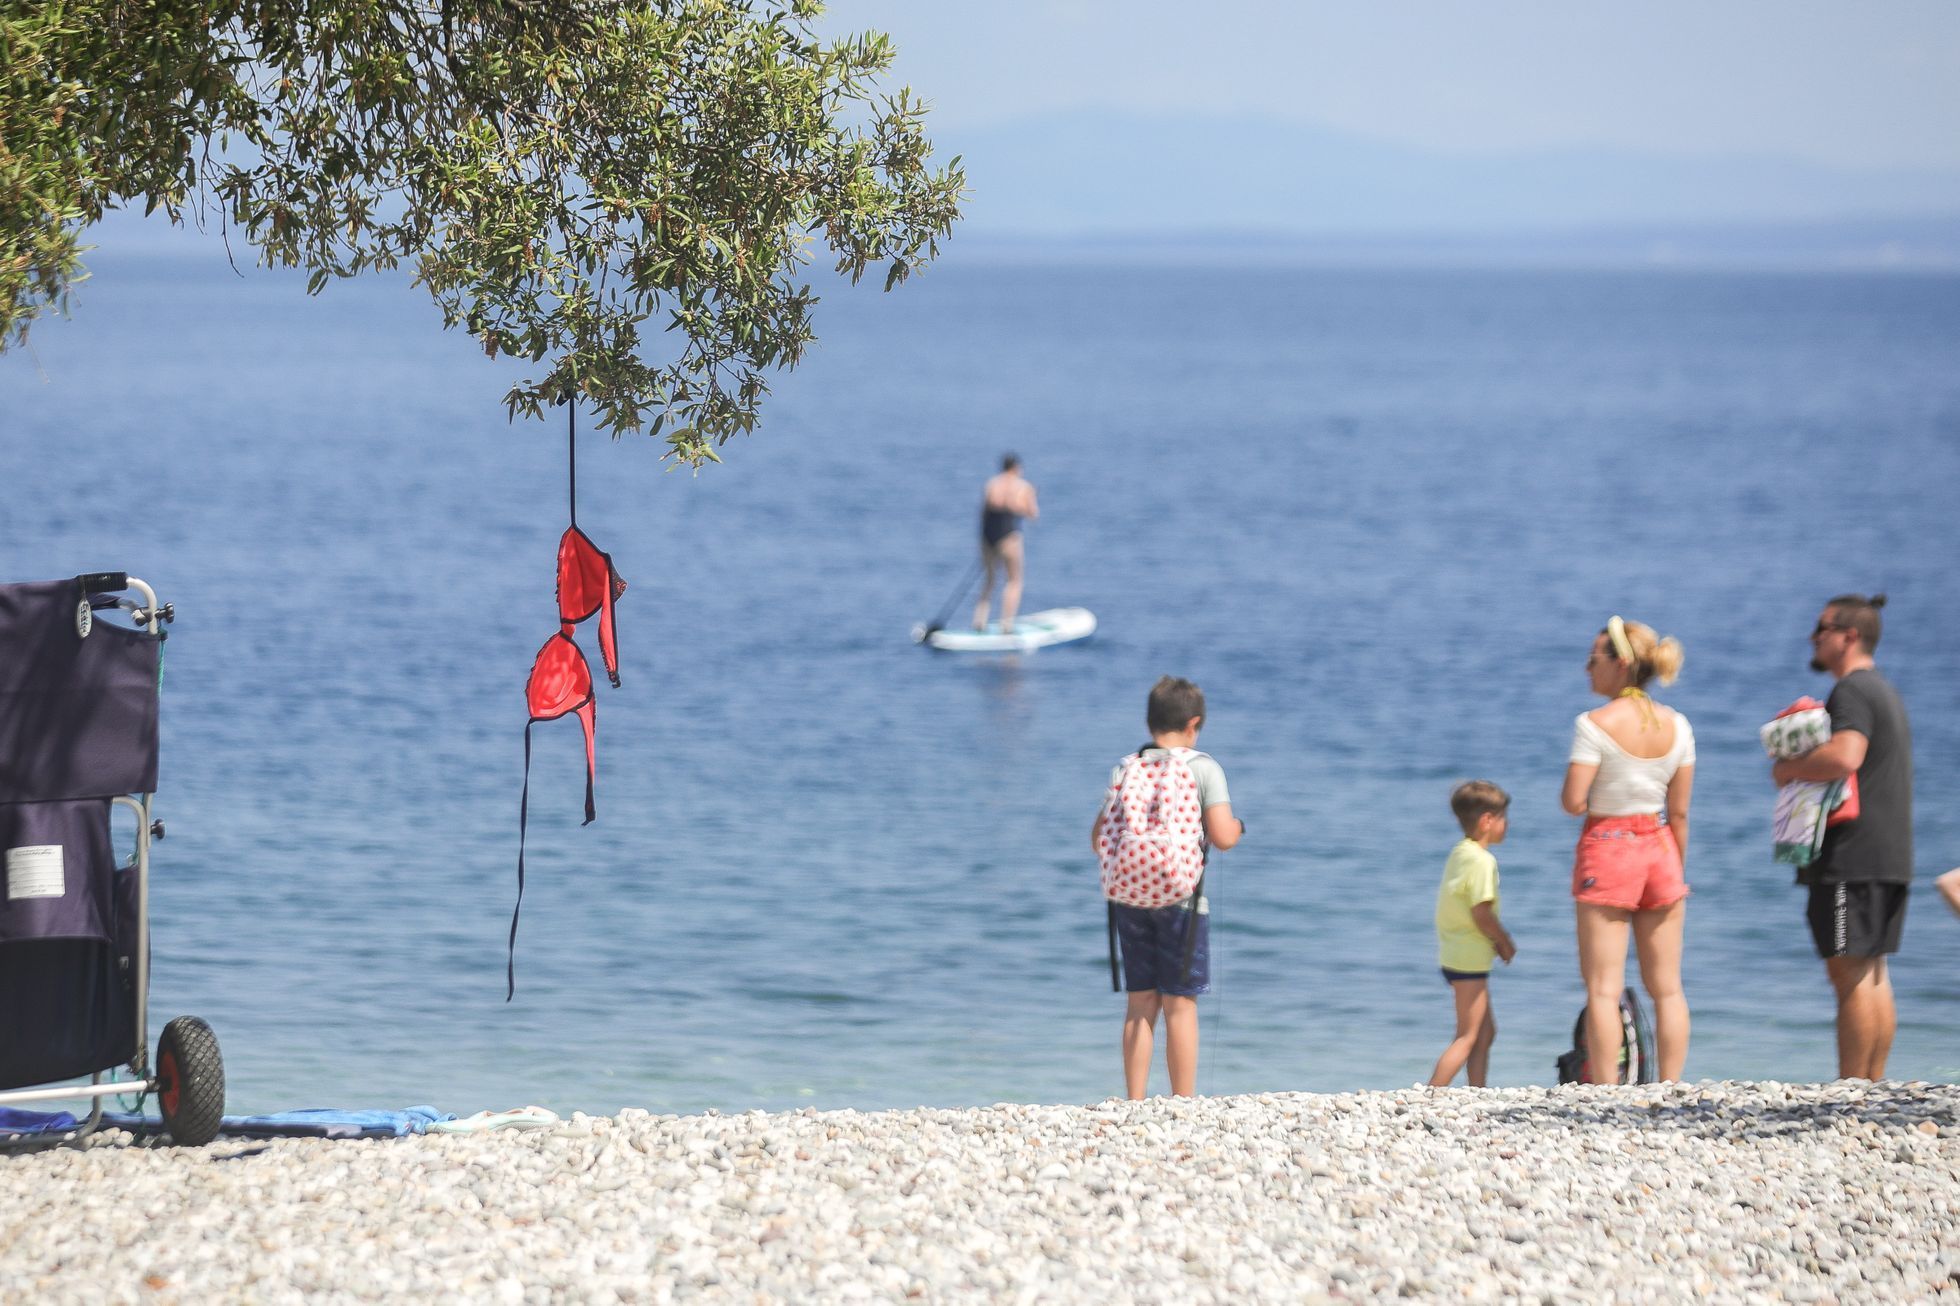 Chorvatsko 2020, pláže, dovolená, koupání, léto, teplo, plavky